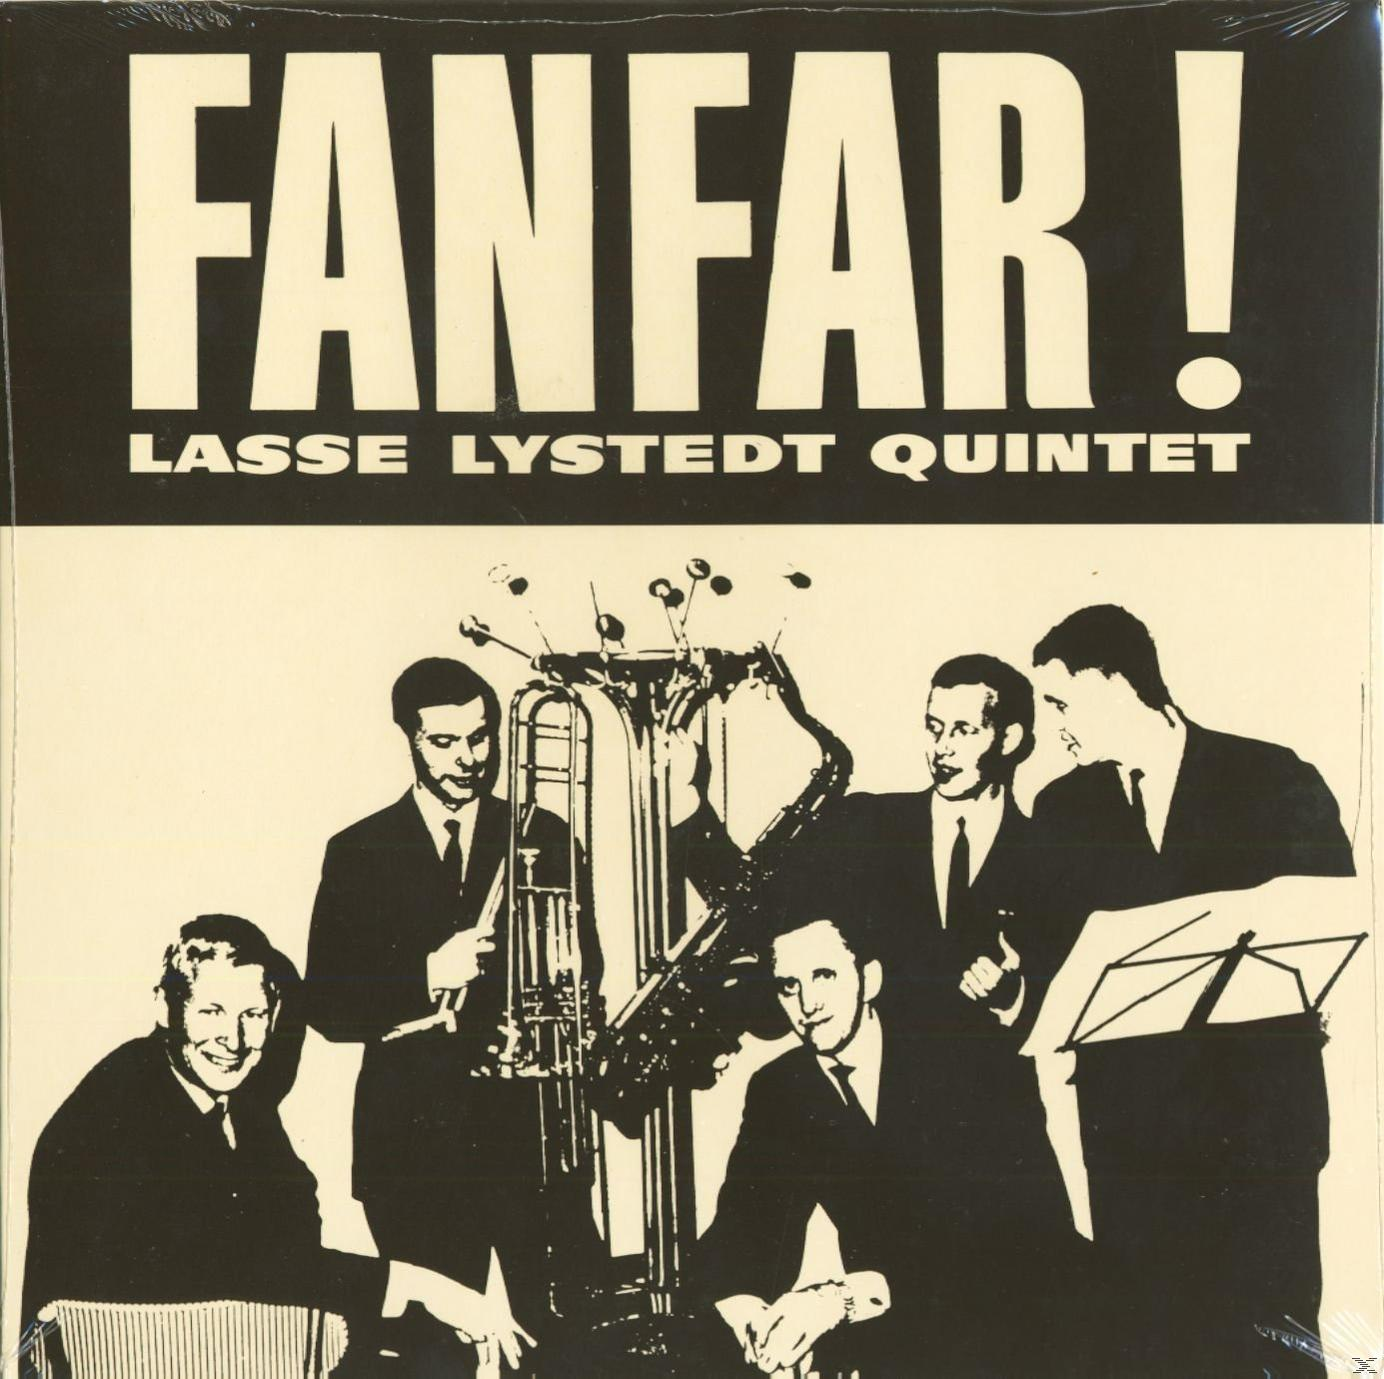 Lasse Lystedt Quintet - Fanfar! (Vinyl) - (10inch)